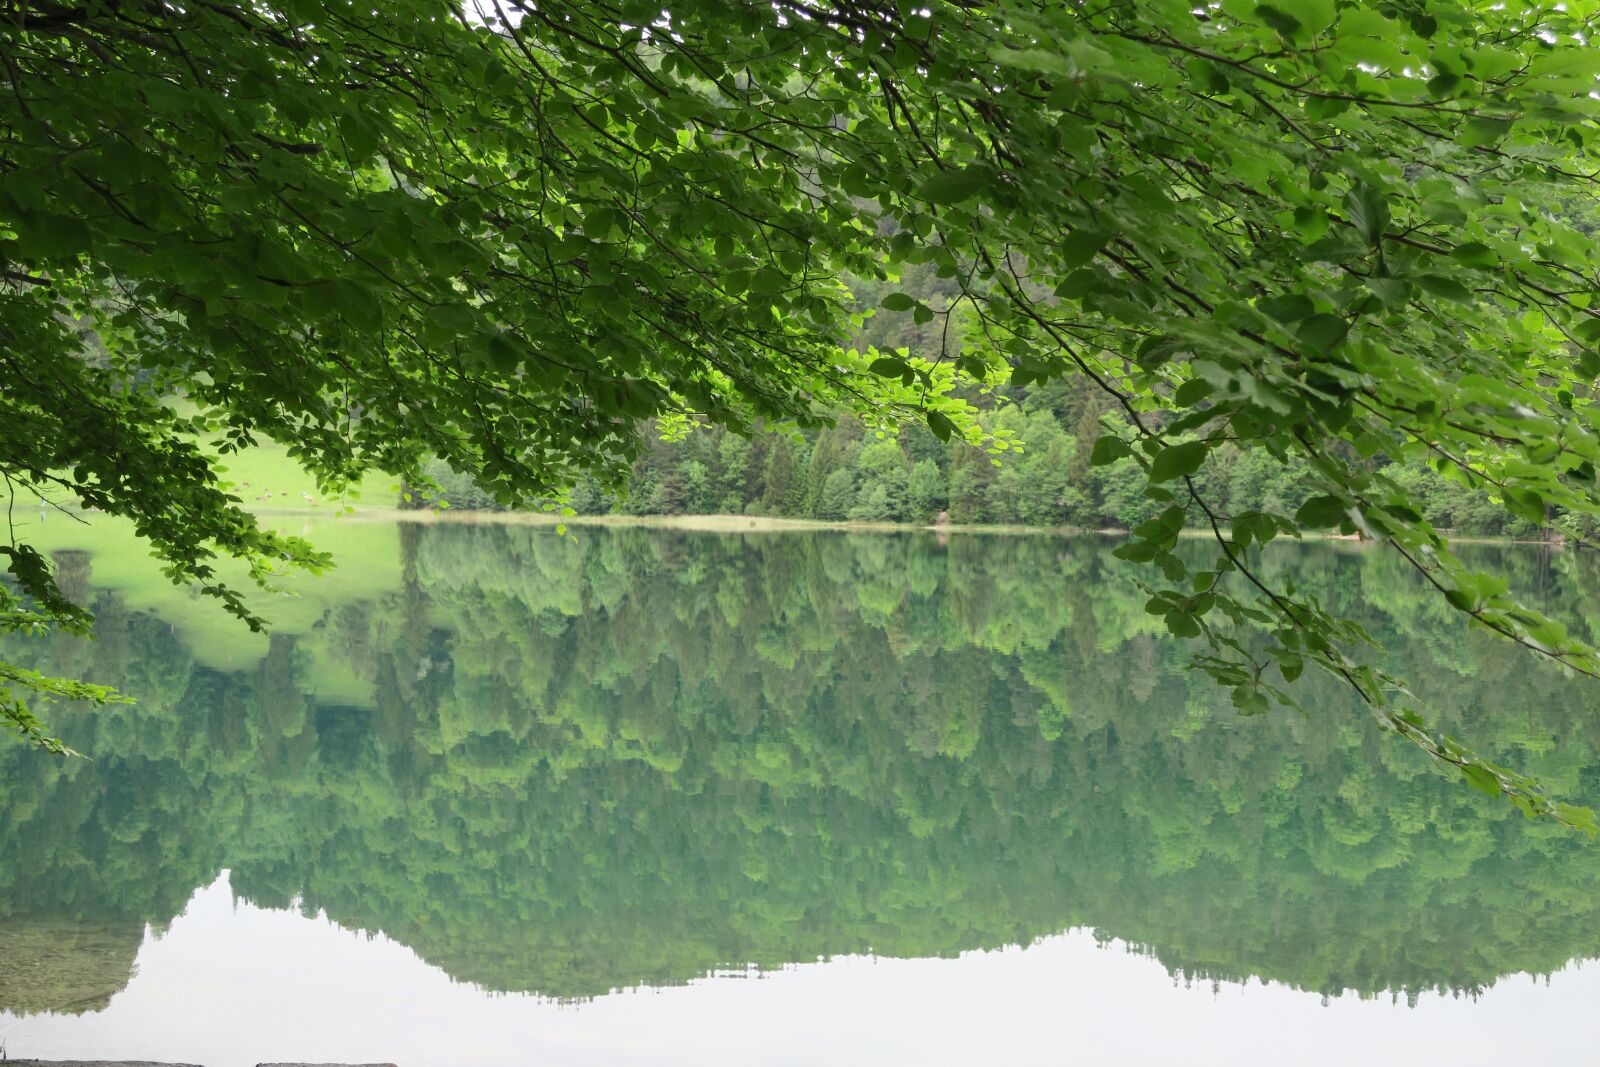 Canon PowerShot G9 X sample photo. Lake, reflection, landscape photography